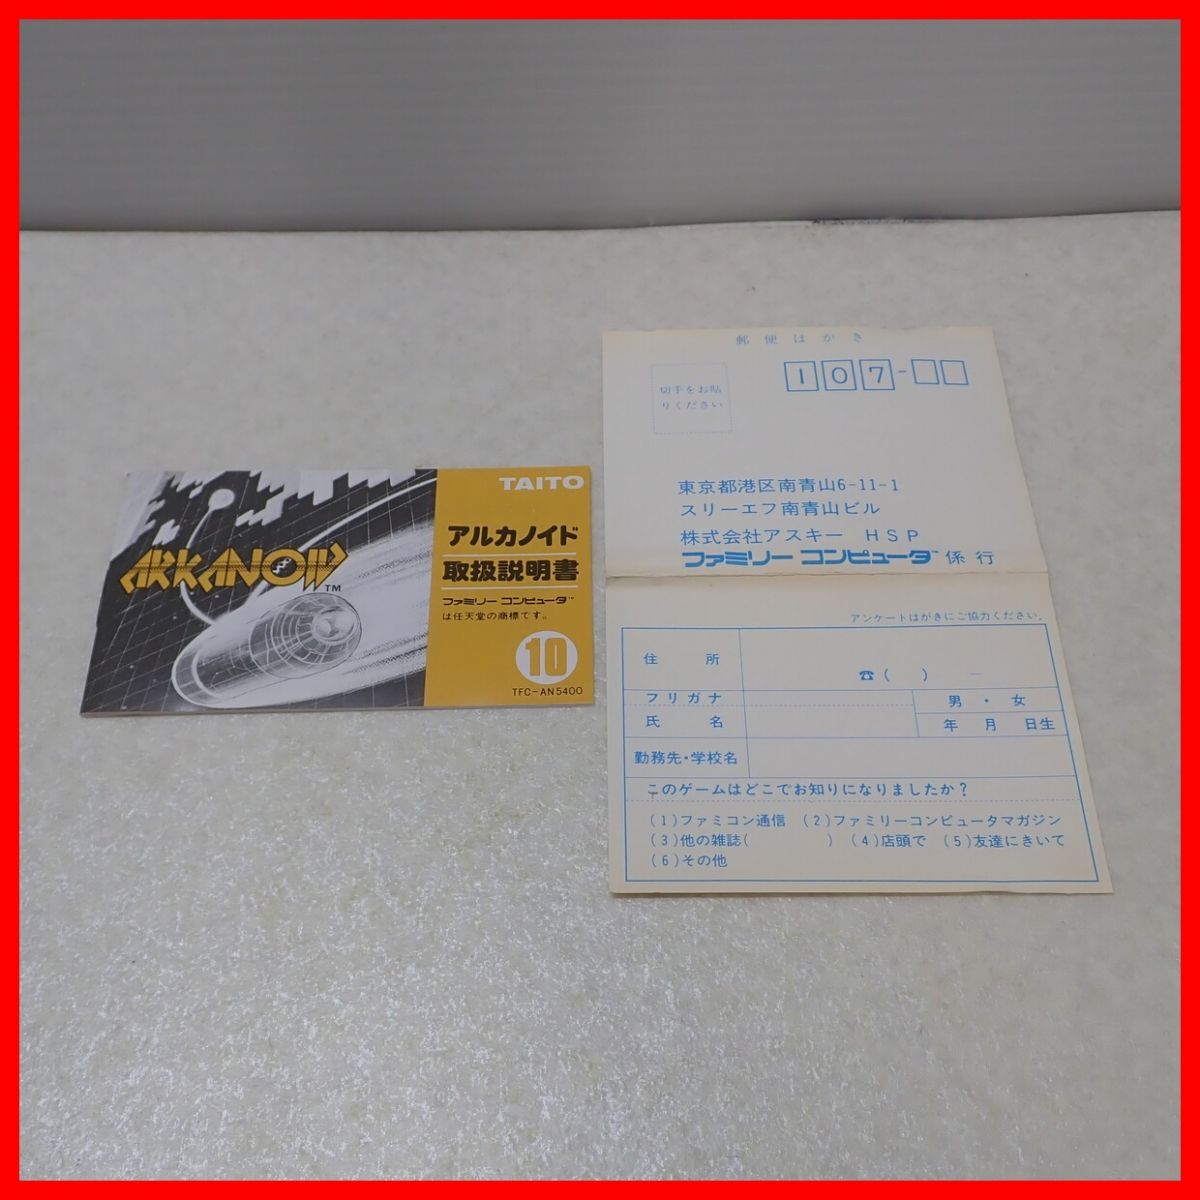 * гарантия работы товар FC Famicom FC Famicom ARKANOIDa LUKA noido контроллер имеется TAITO тугой - коробка мнение открытка есть [10